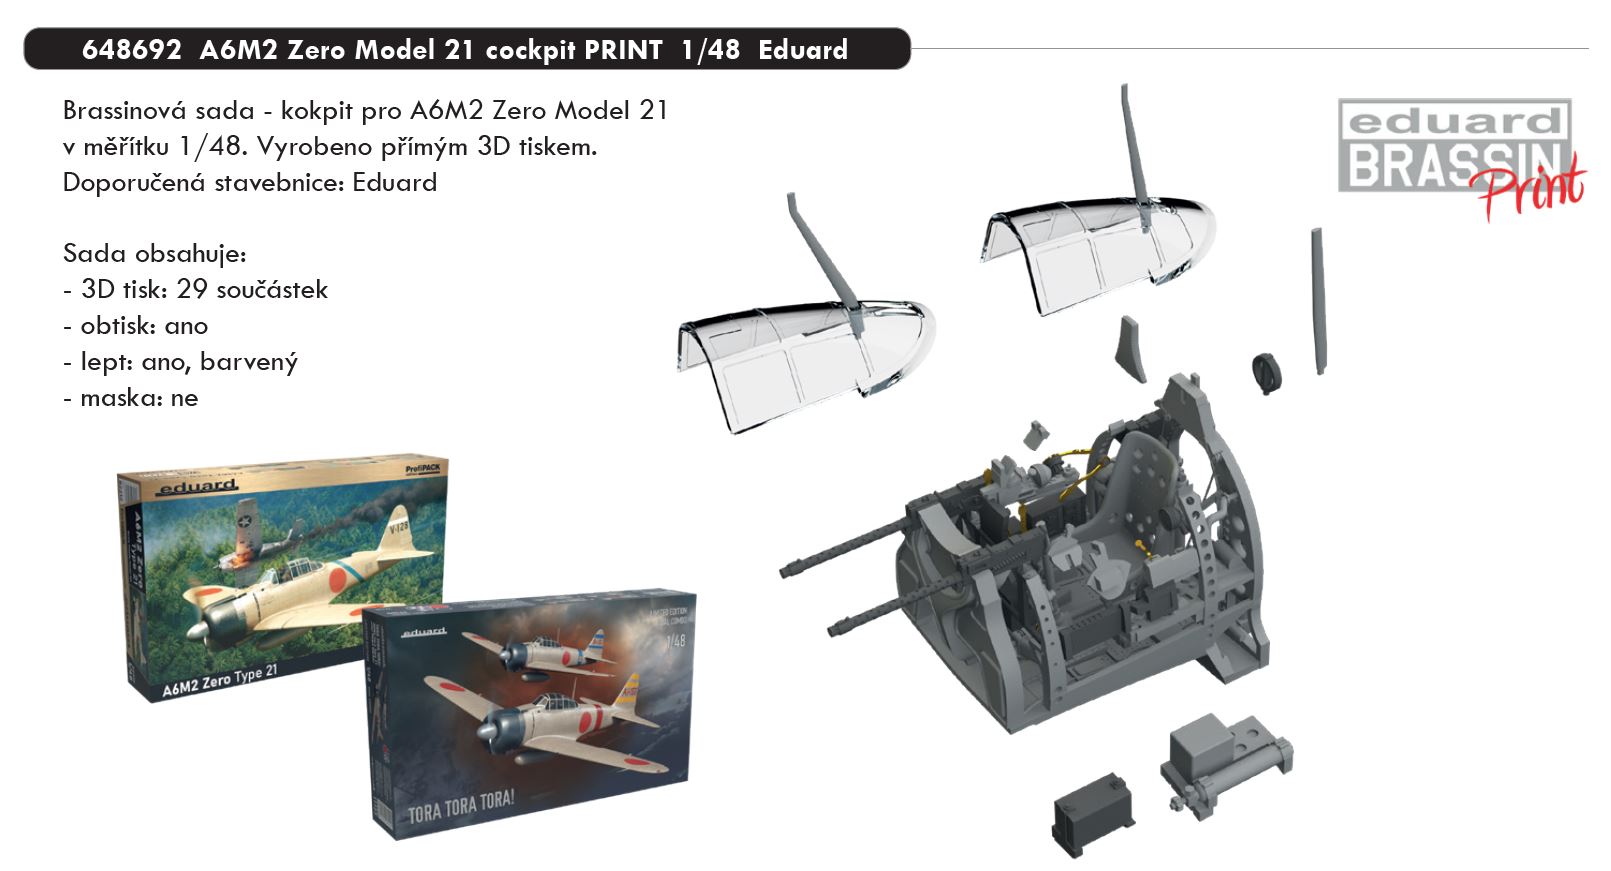 1/48 A6M2 Zero Model 21 cockpit PRINT (EDUARD)